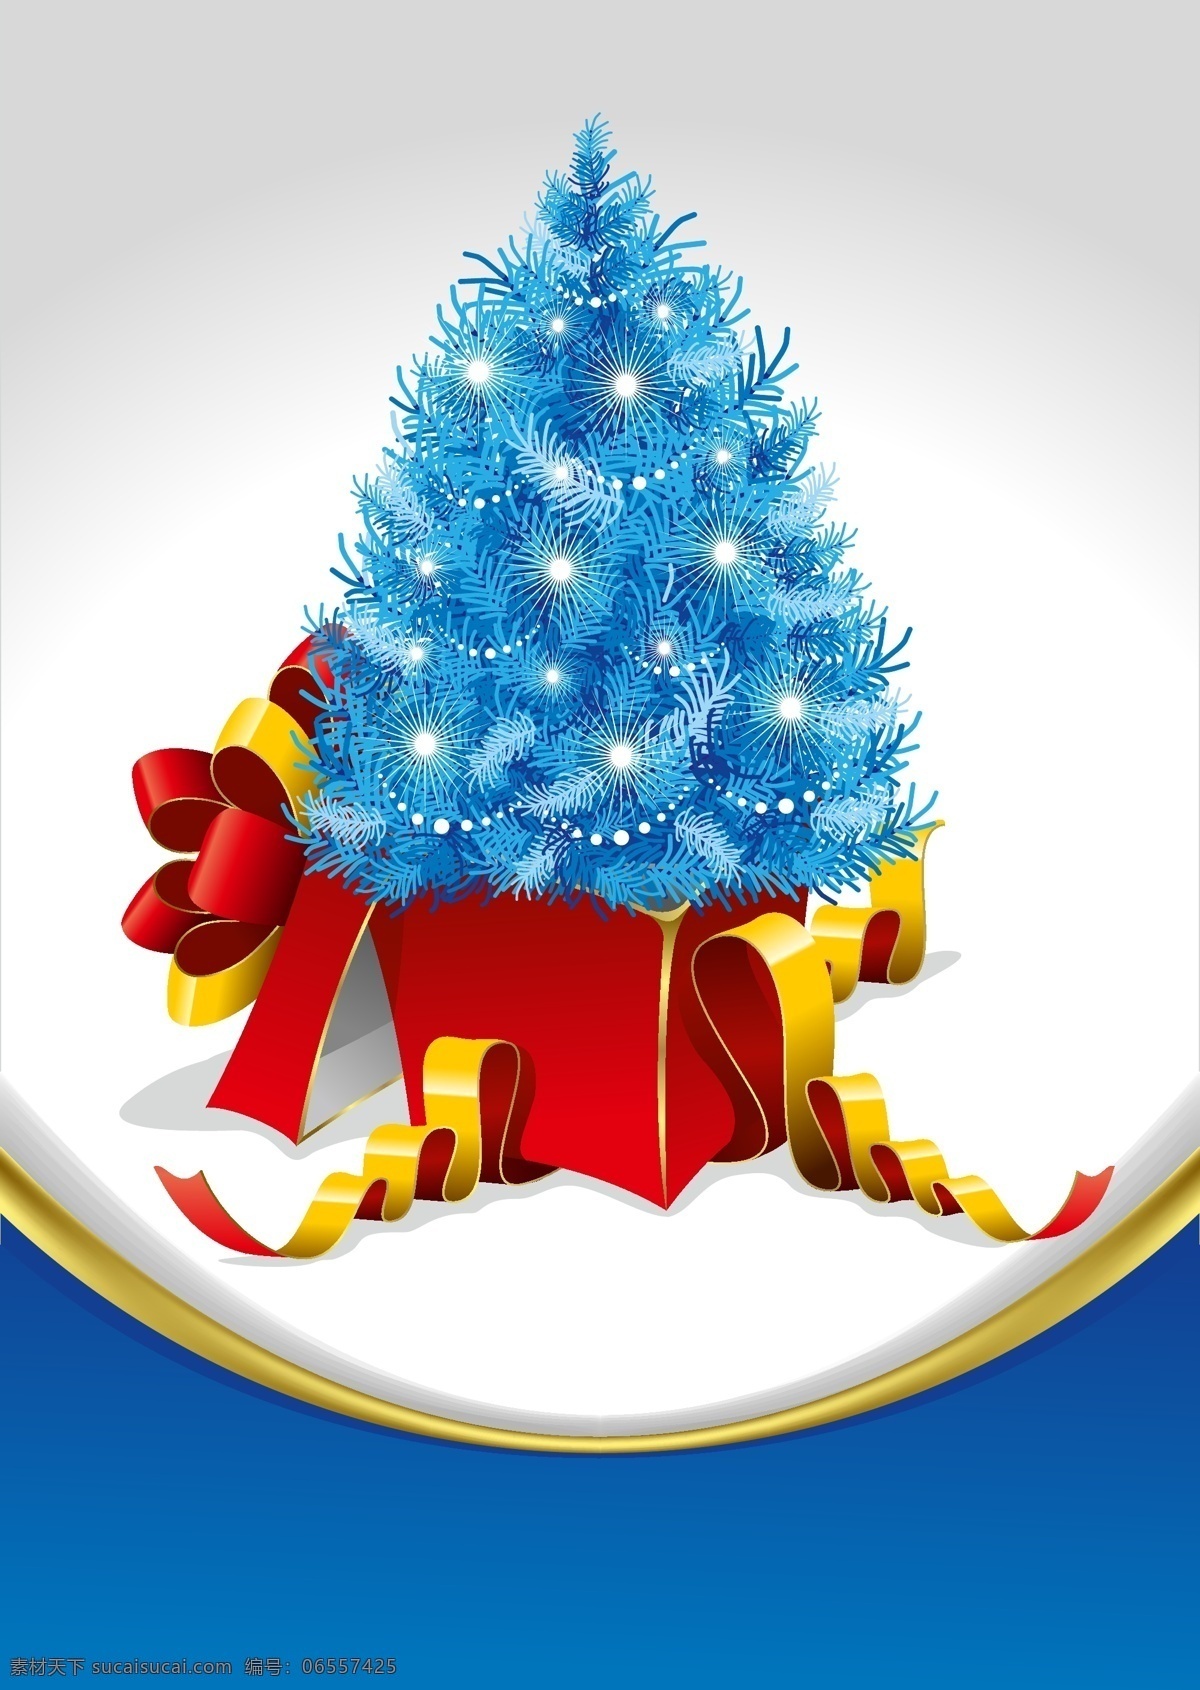 矢量 圣诞节 促销 创意 背景 圣诞树 礼盒 海报